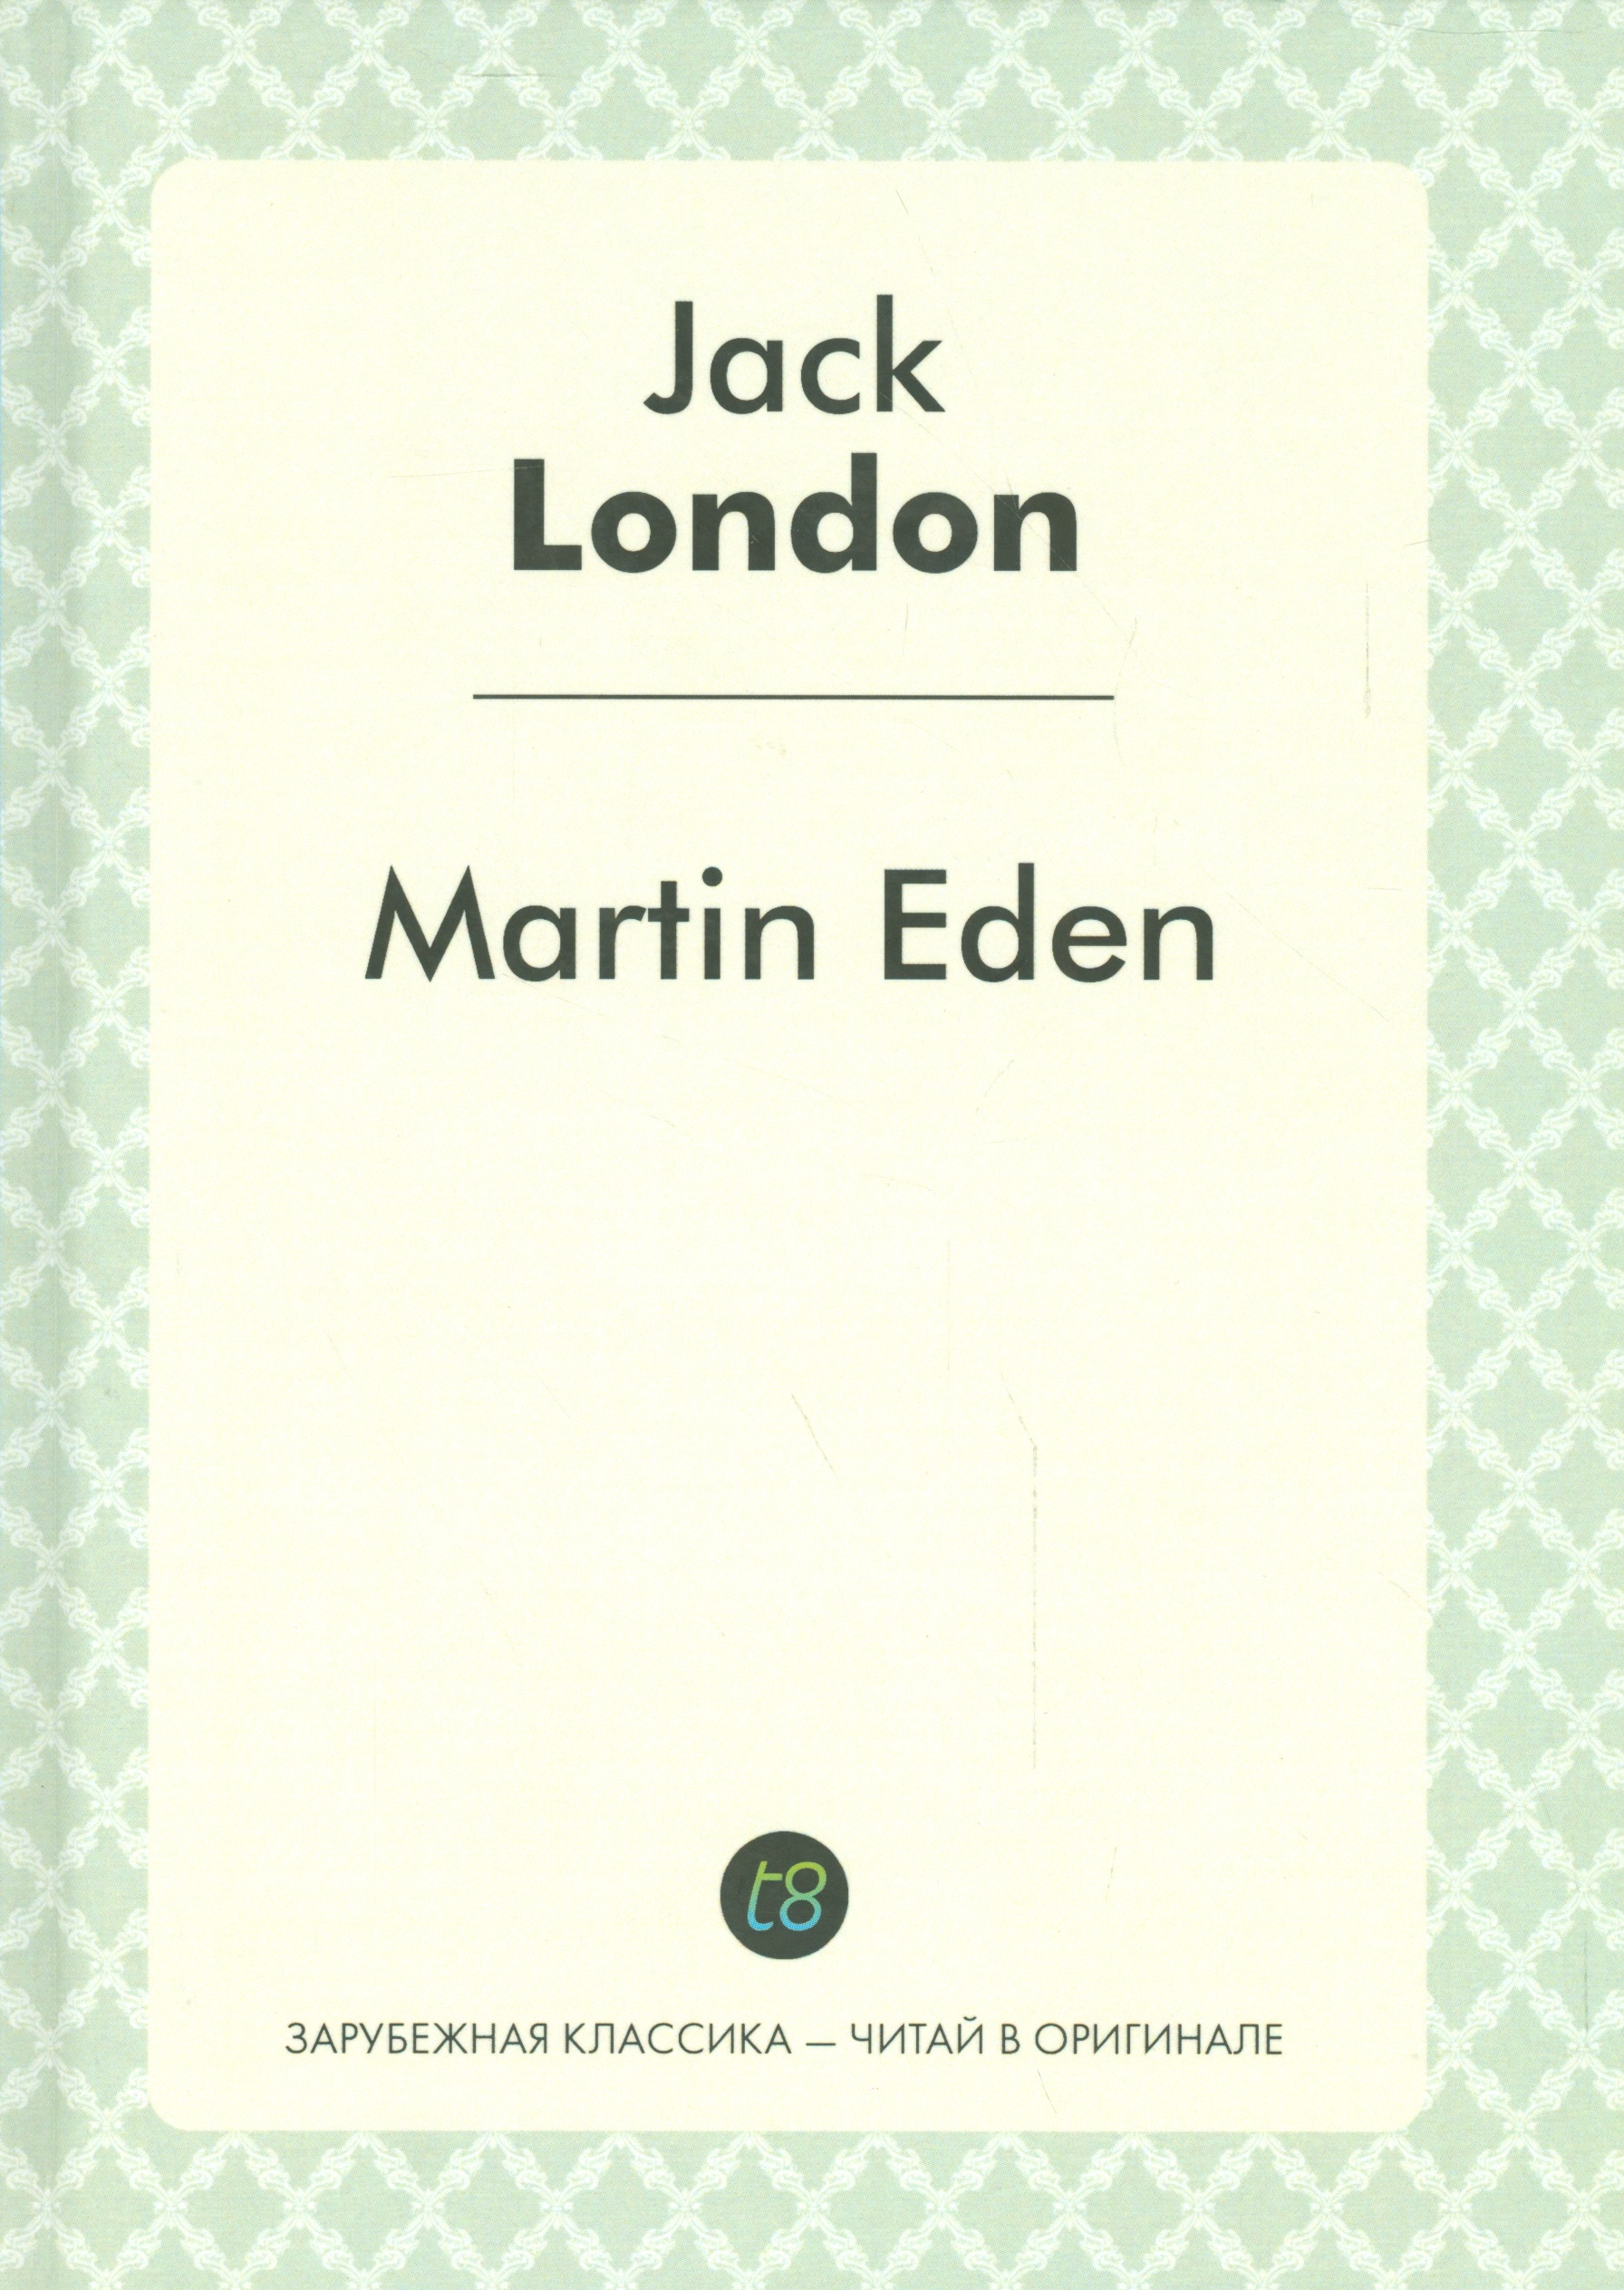 лондон джек мартин иден martin eden Лондон Джек Martin Eden = Мартин Иден: роман на англ.яз.